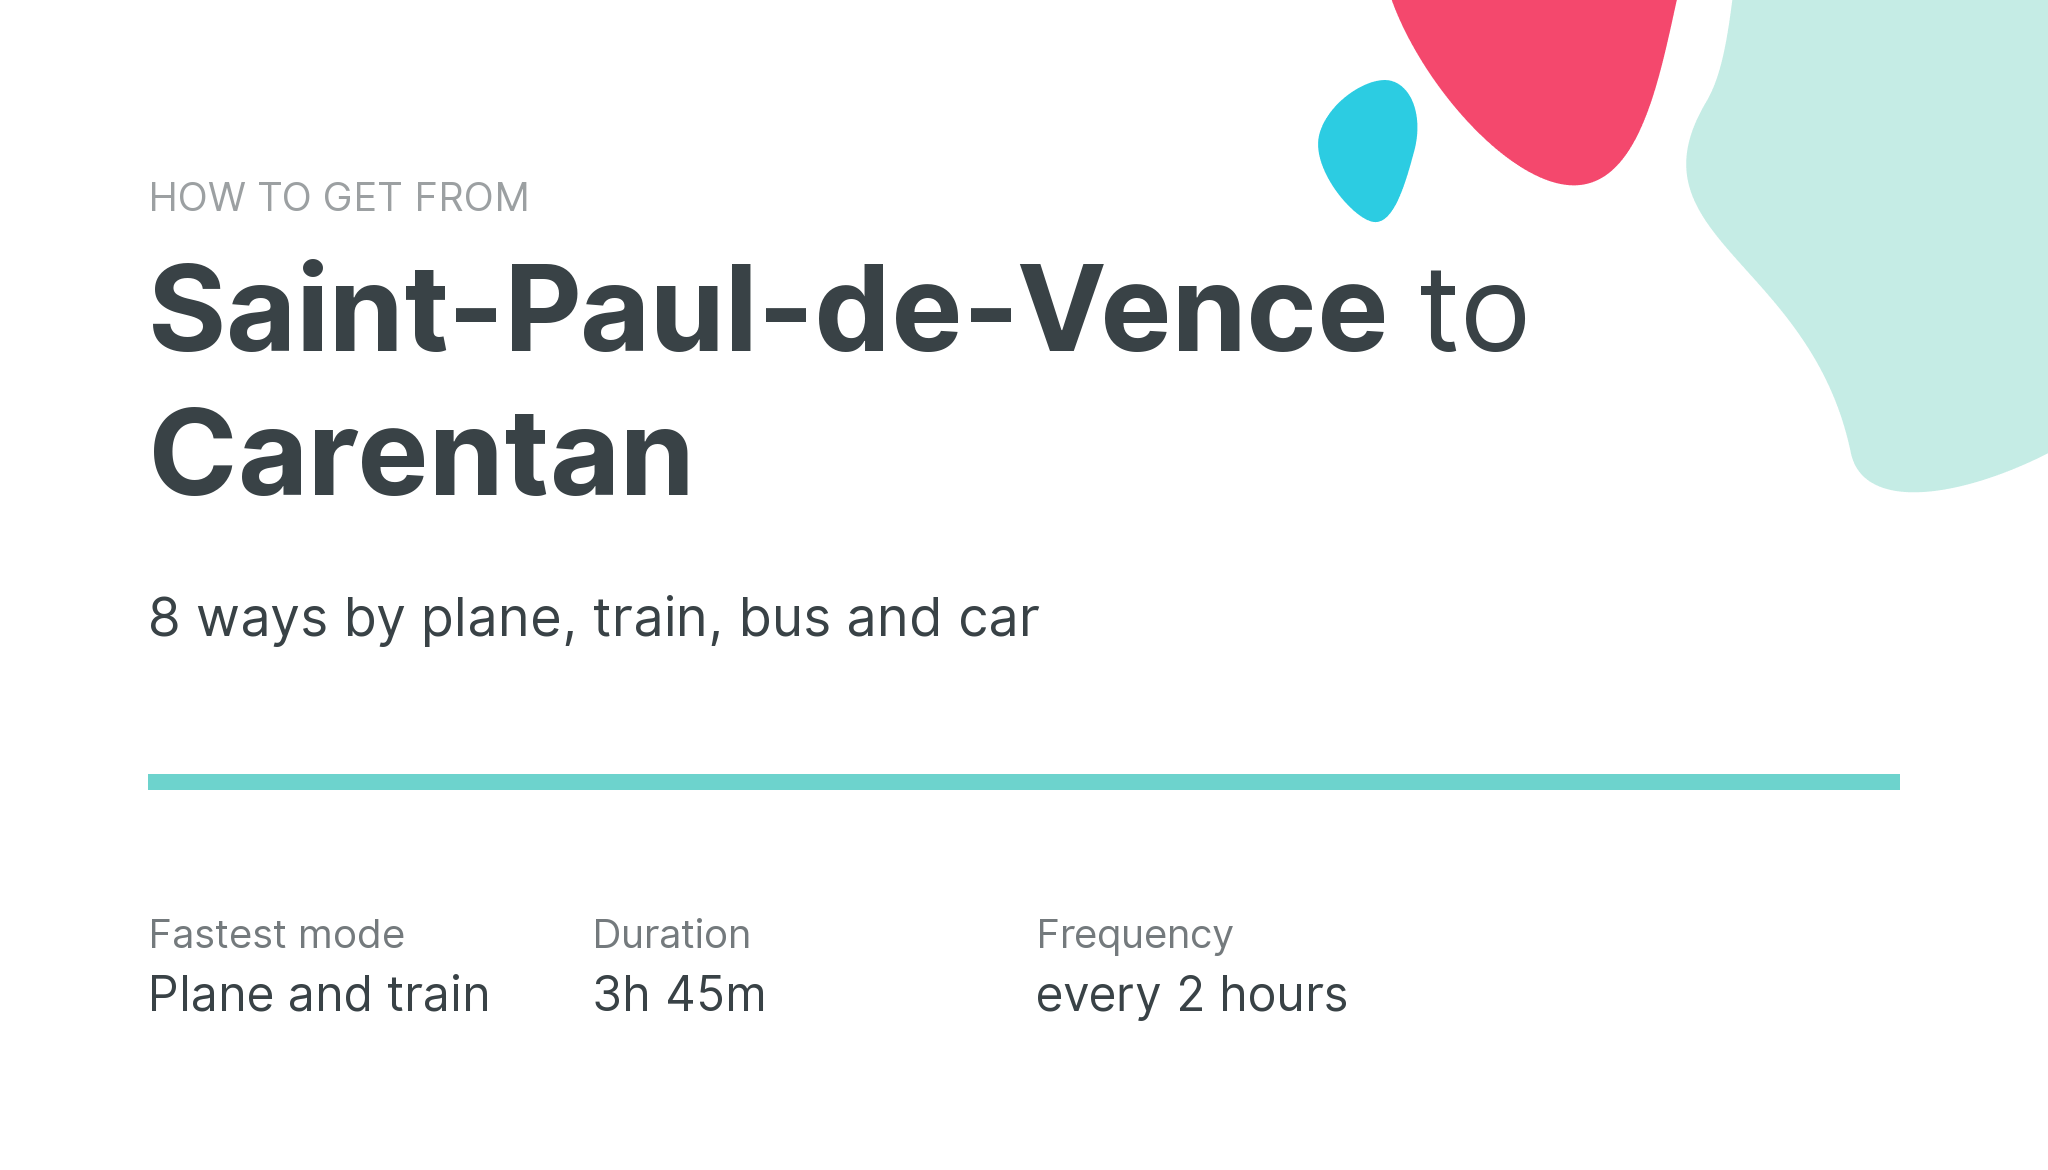 How do I get from Saint-Paul-de-Vence to Carentan